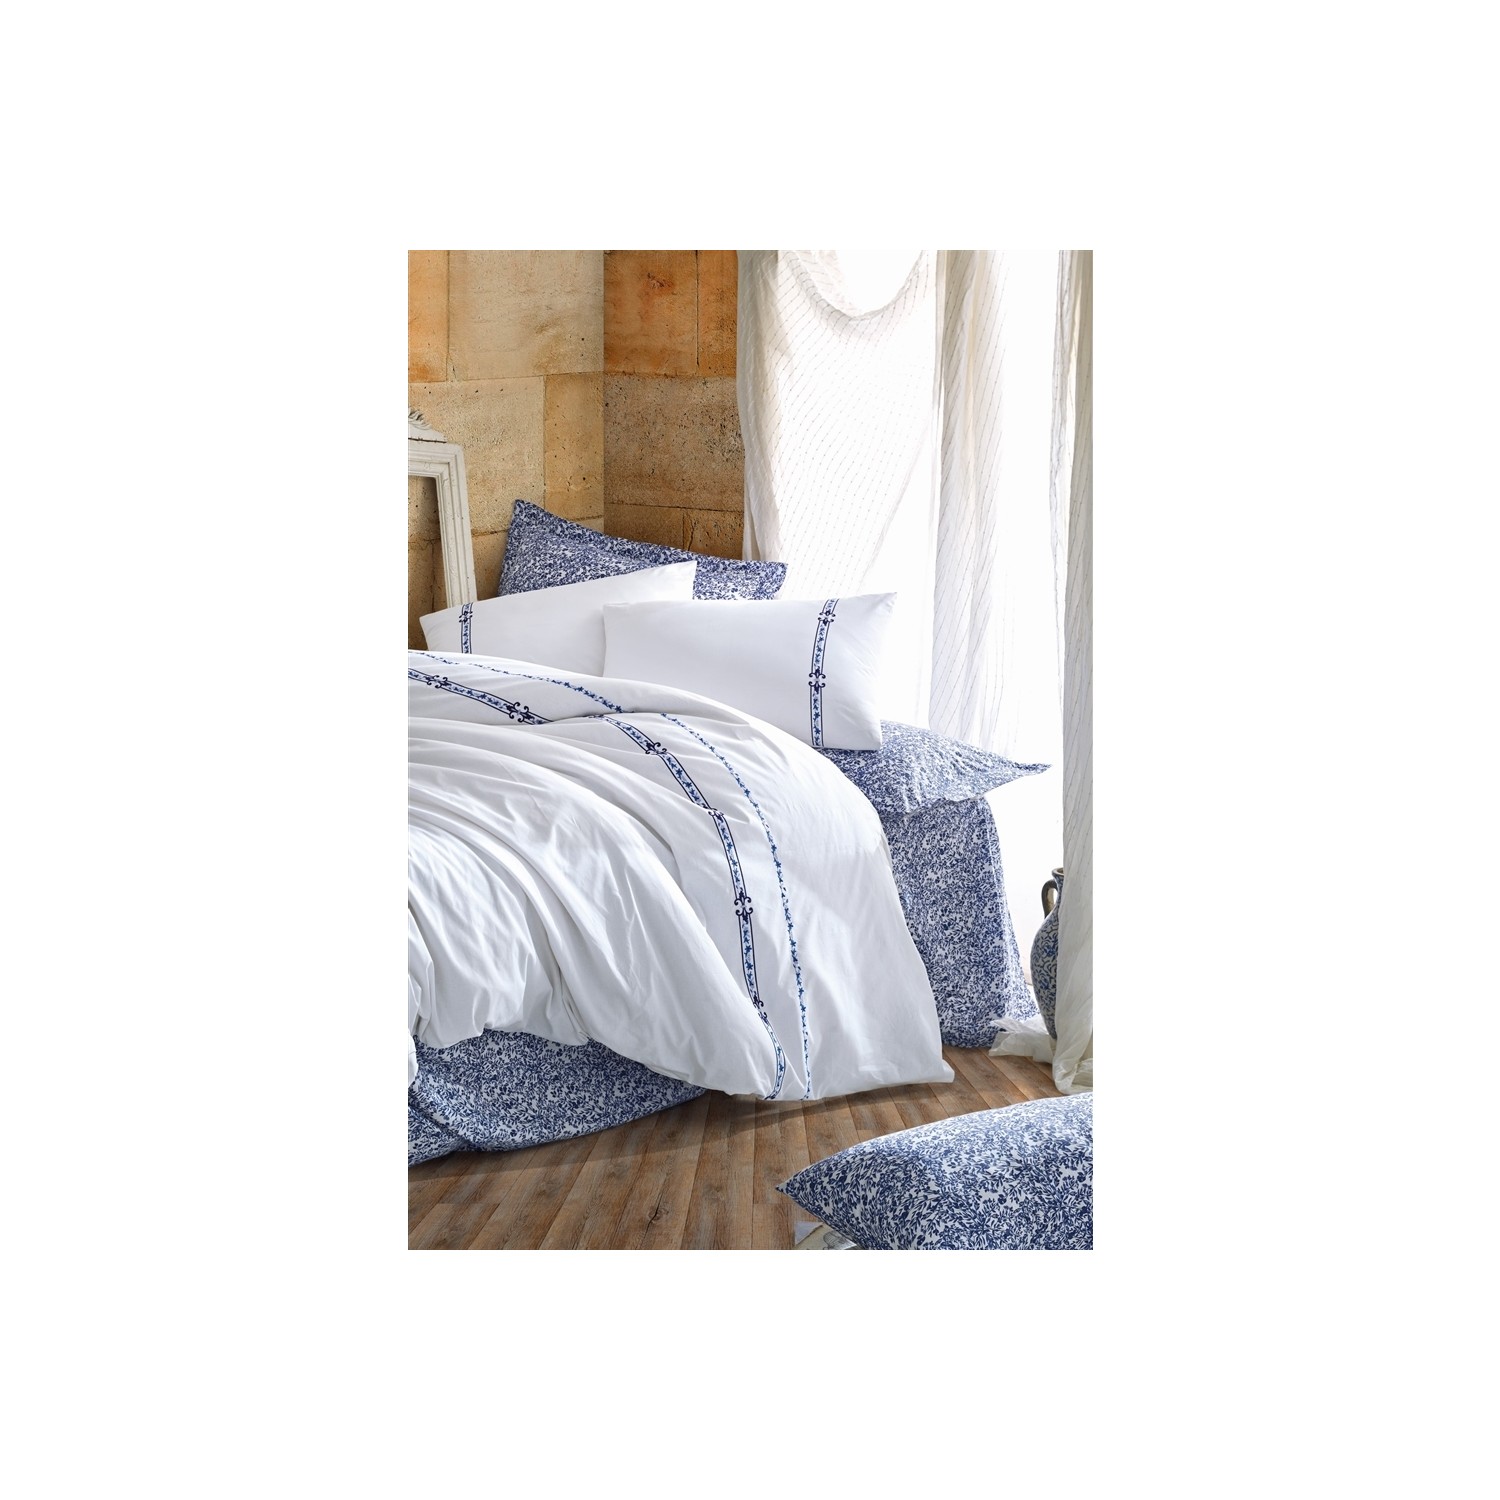 Комплект постельного белья из хлопка Box Majestic Series с вышивкой - Delmor soja mavi beyaz keten dolgu topuk terlik